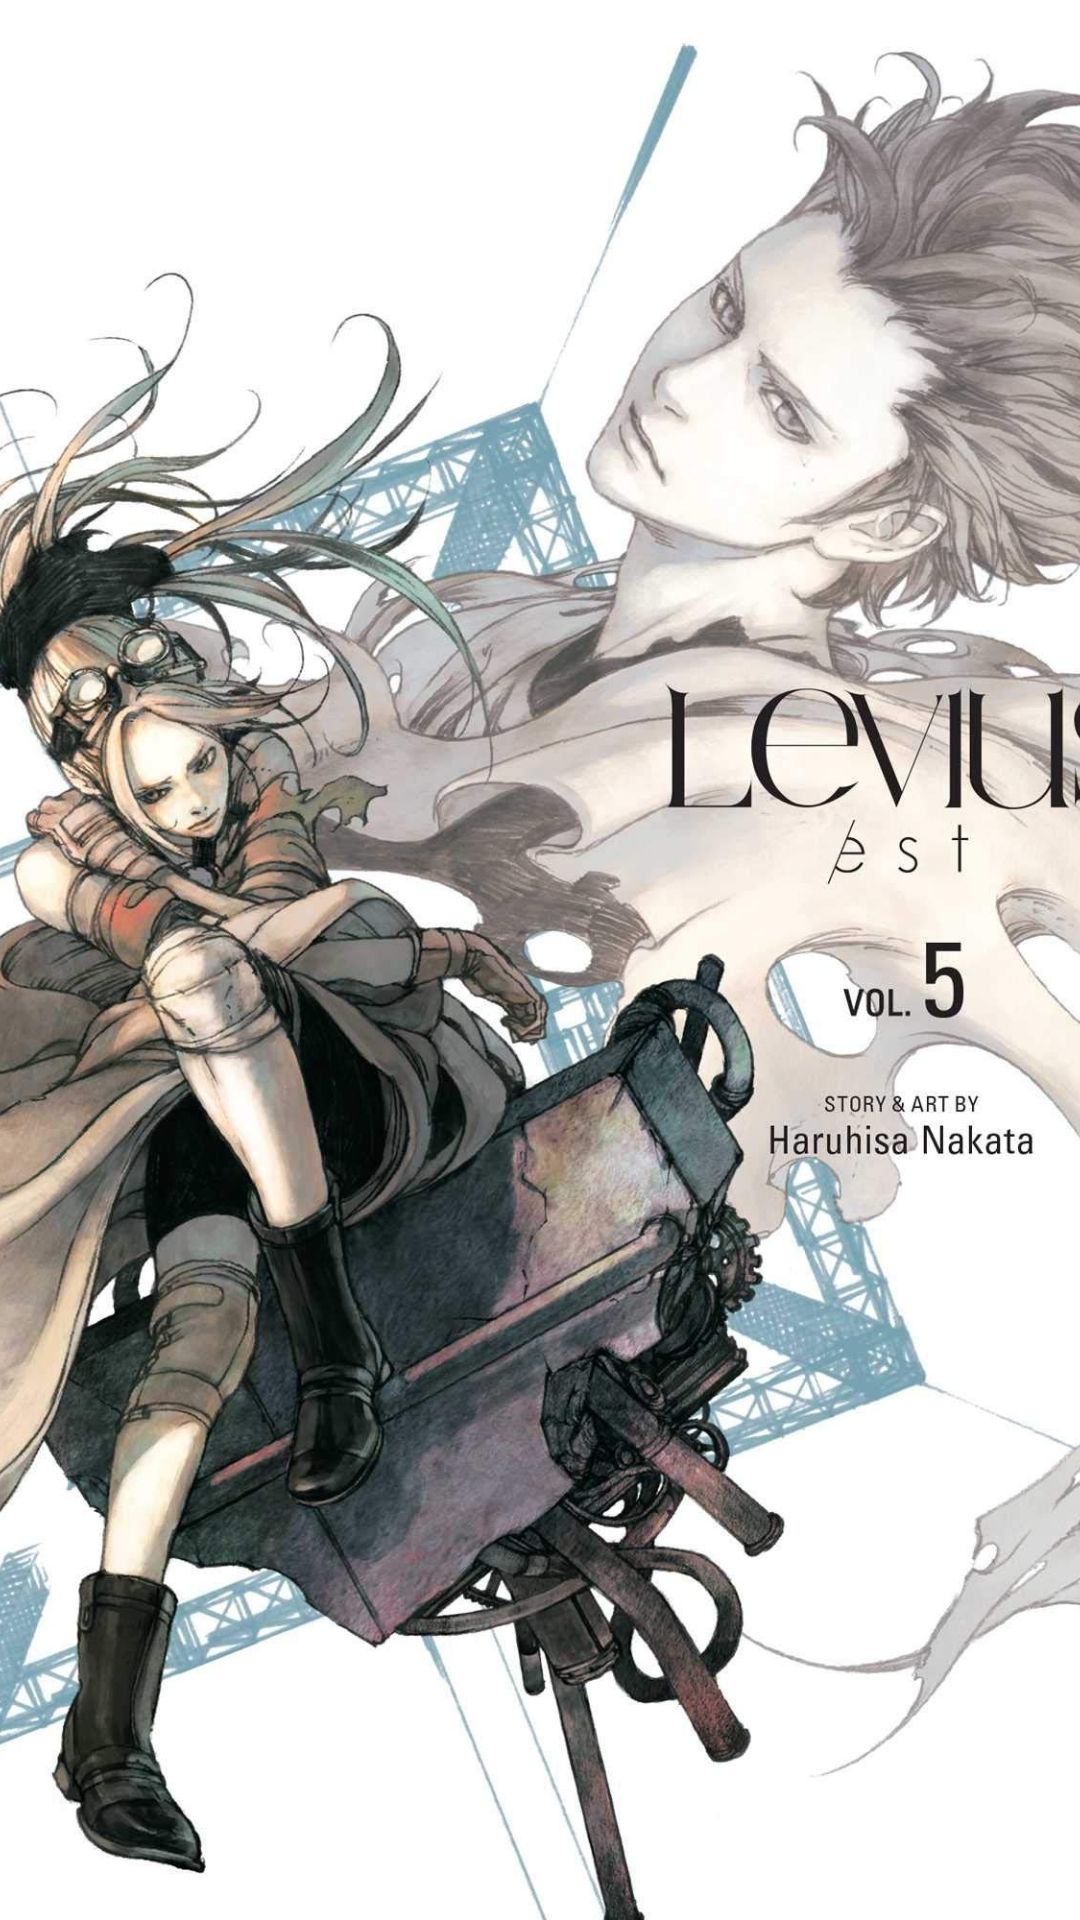 Levius Est Sequel Manga Of Levius To Enter Its Final Volume